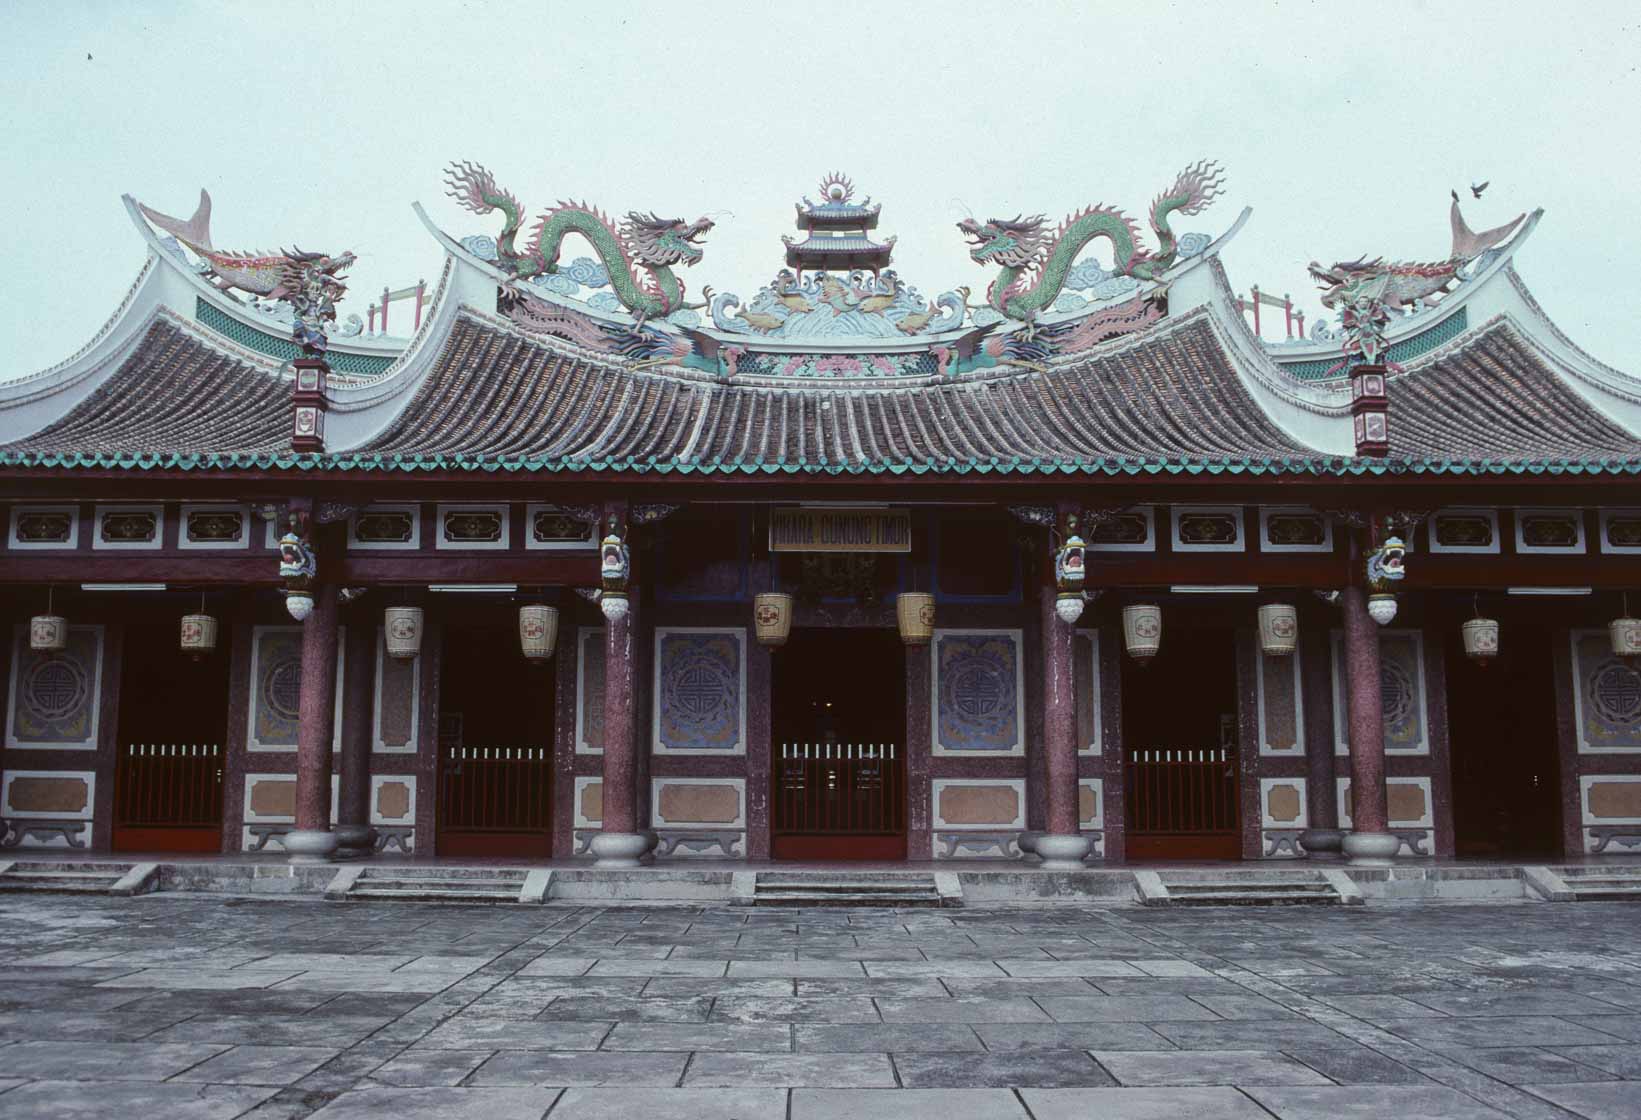 <span style="font-family: Verdana; font-size: 16px; color: ">Chinese tempel 'Tong Ka Kwang', Sumatra</span>